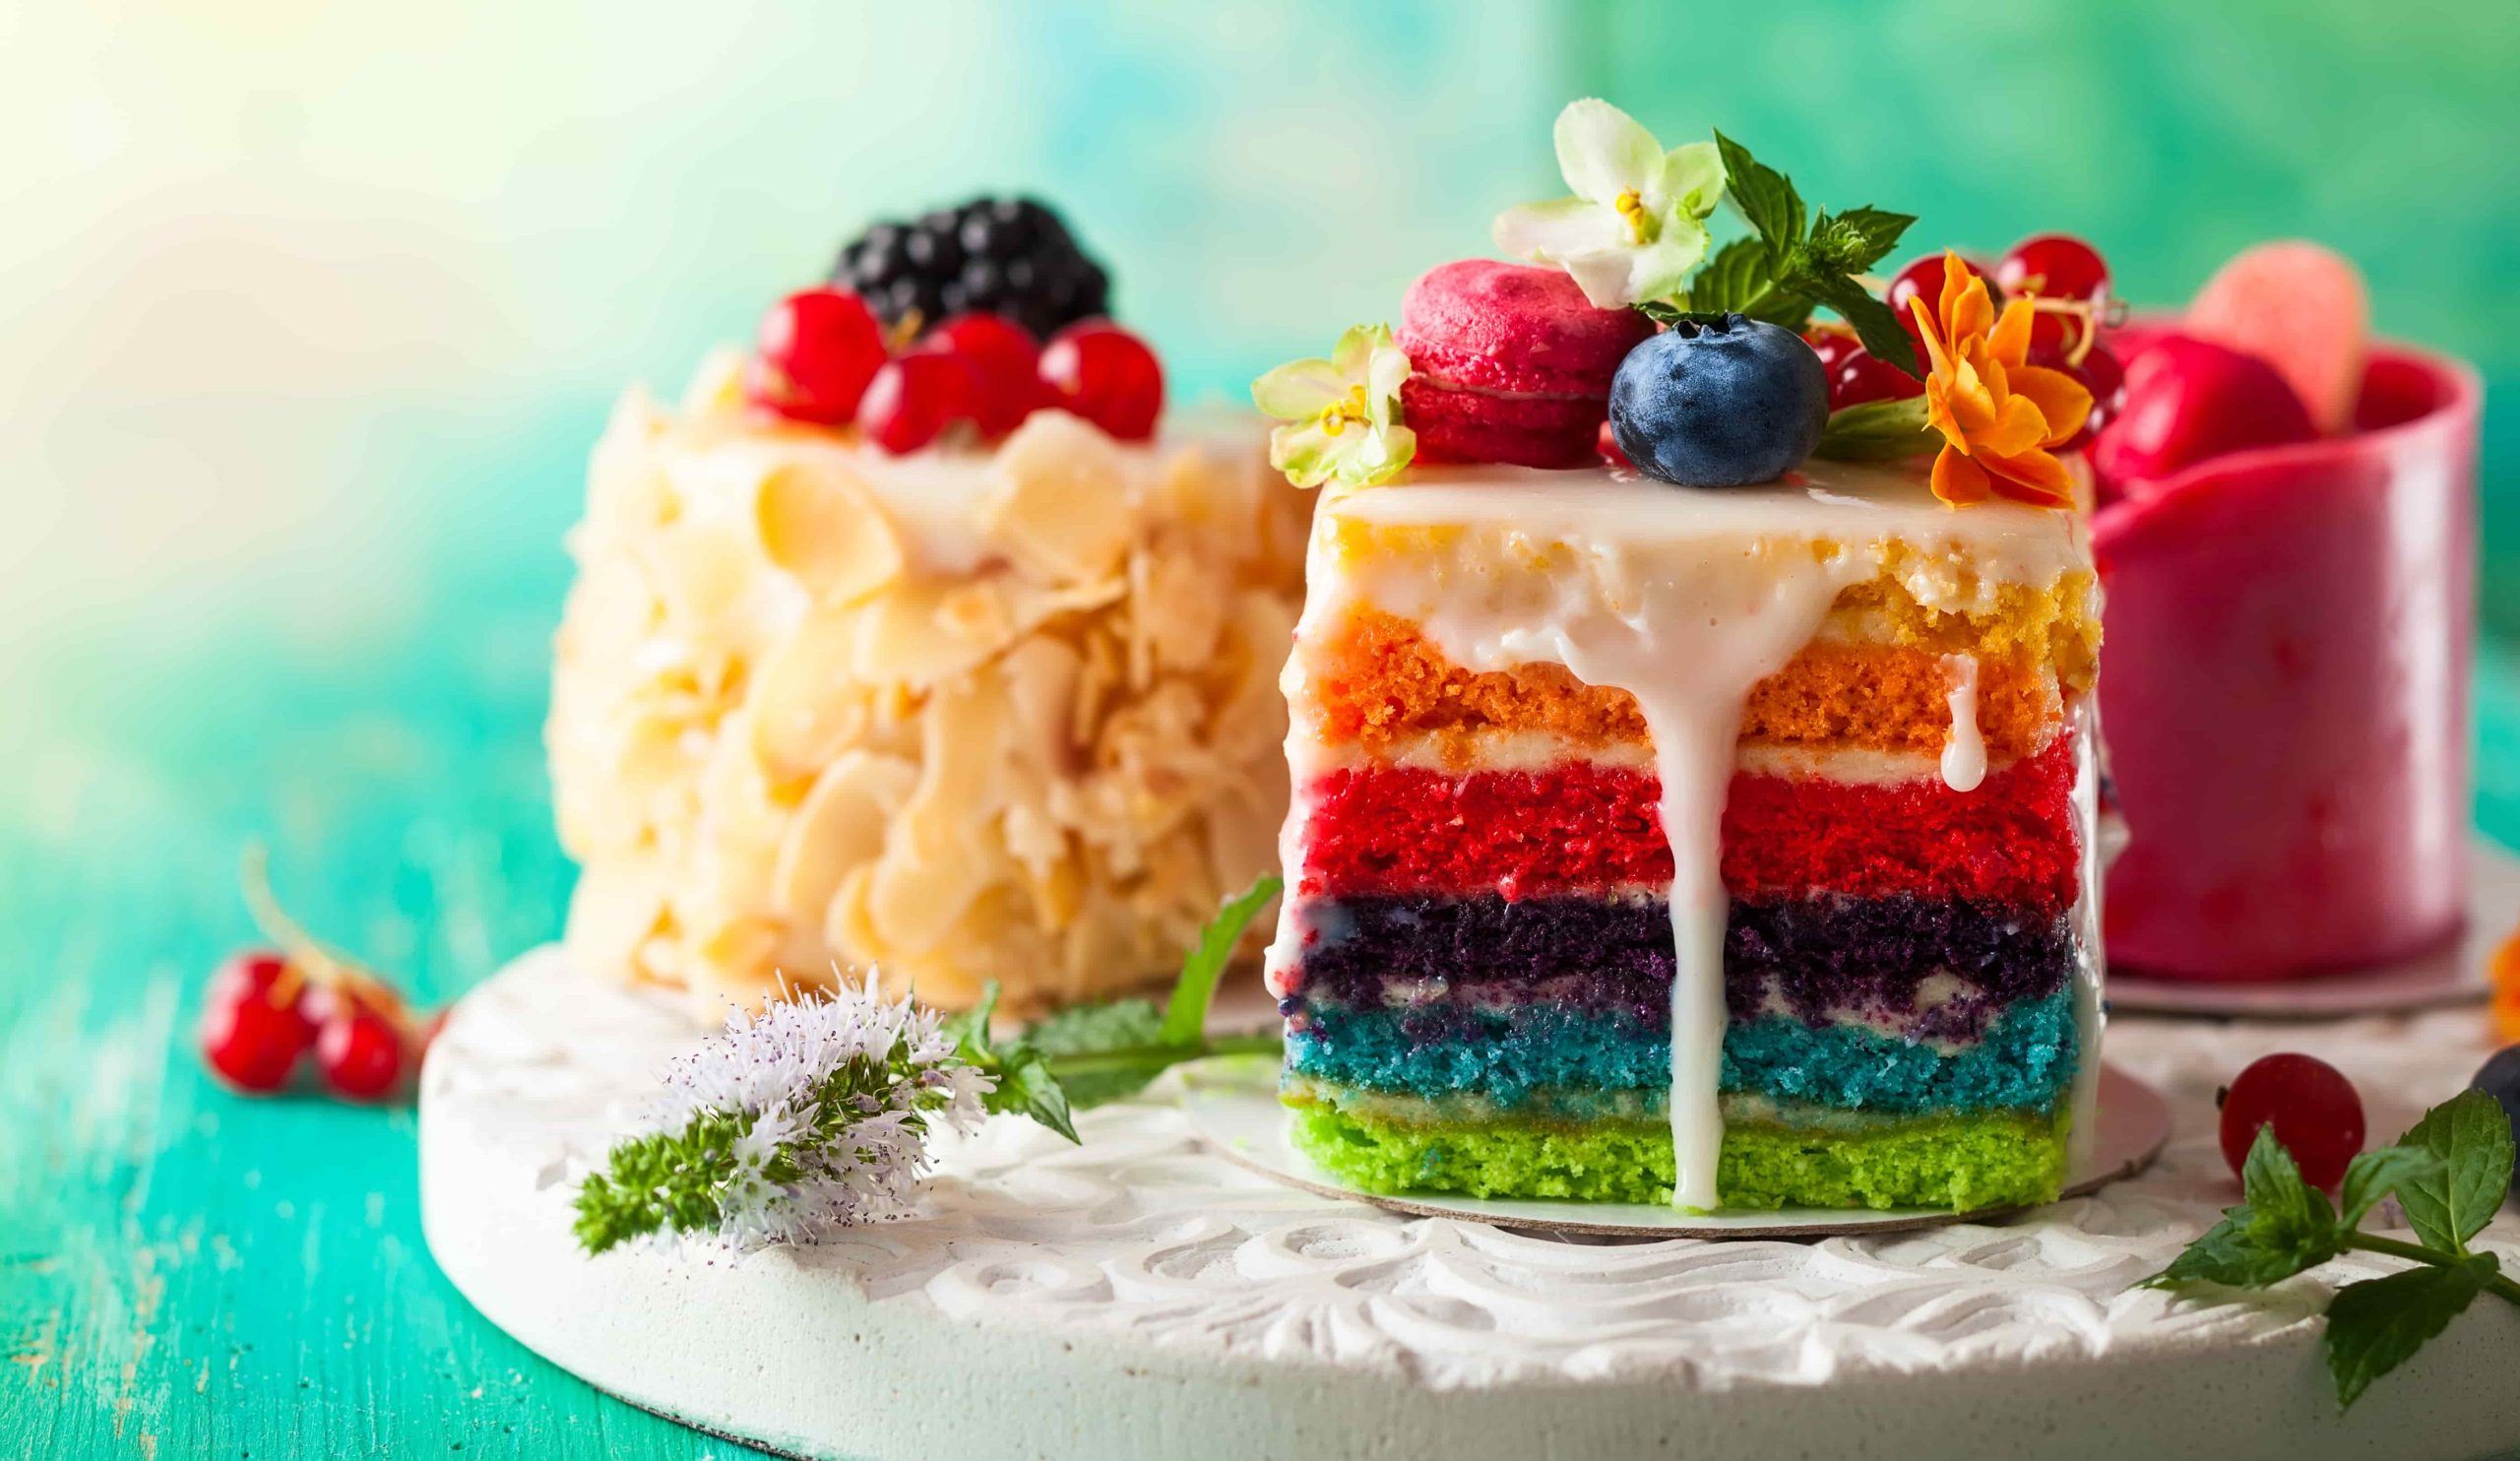 Layer Cake - Livraison Gratuite Pour Les Nouveaux Utilisateurs - Temu France